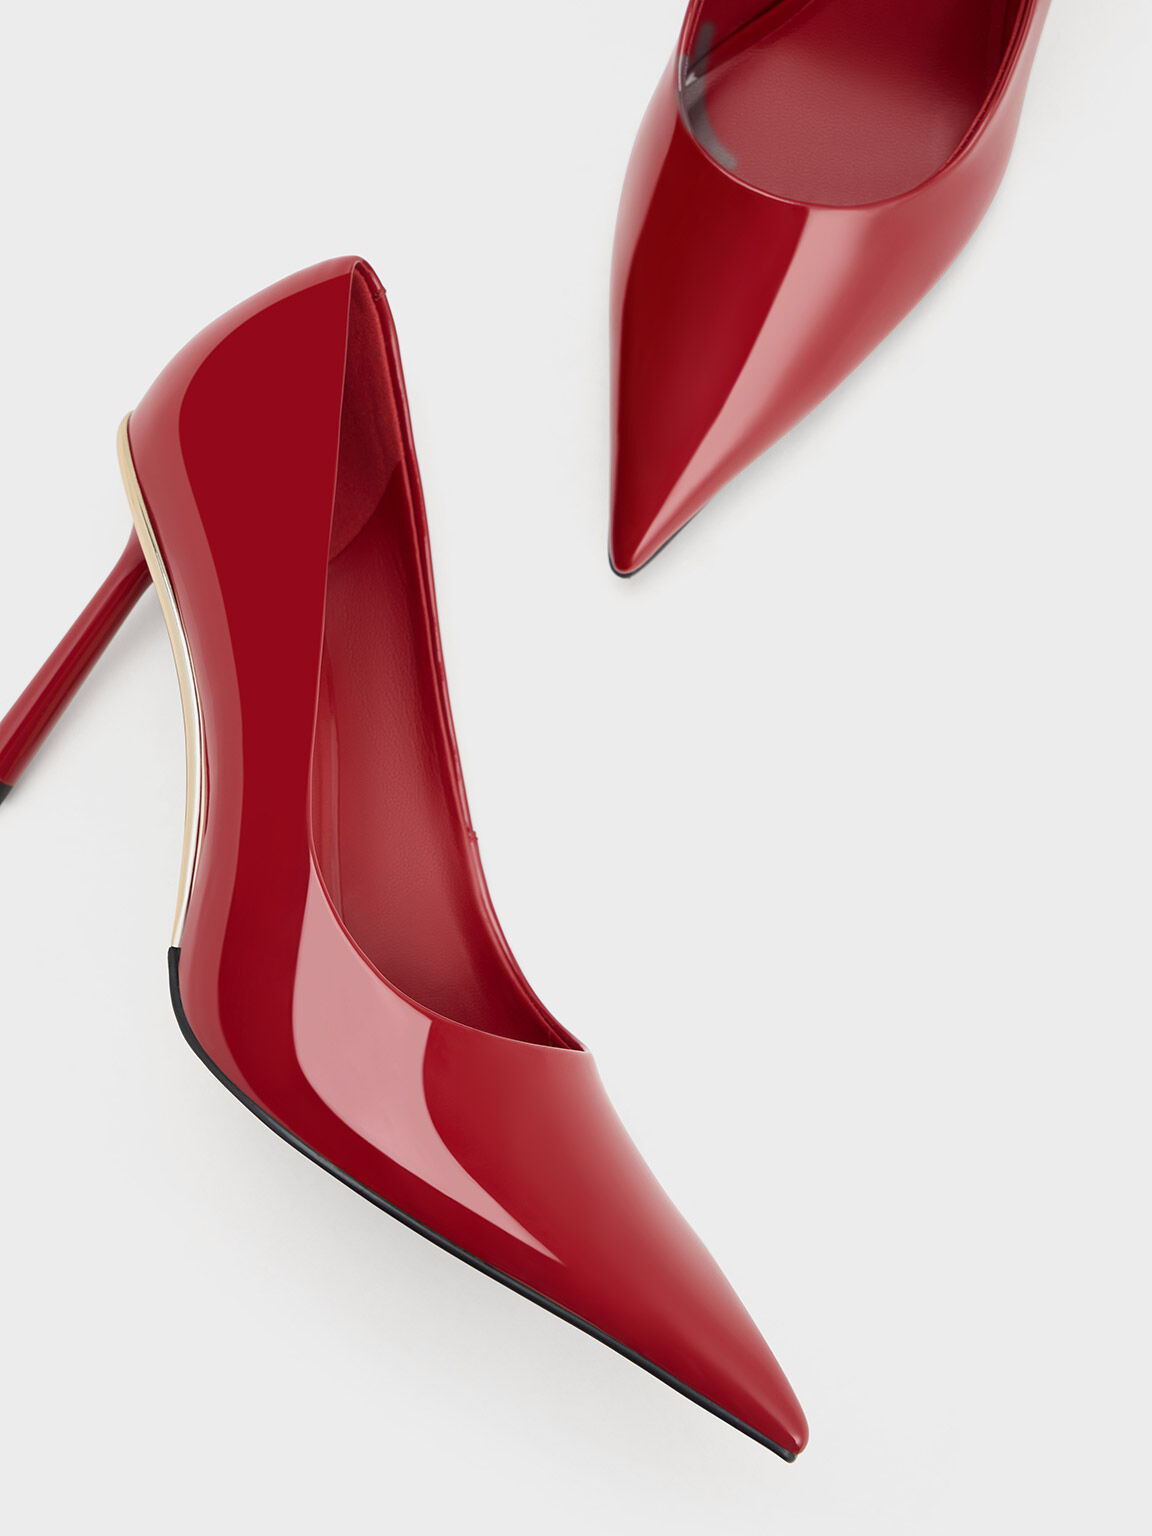 Red Heels & Toes | Heels, High heels, Beautiful shoes